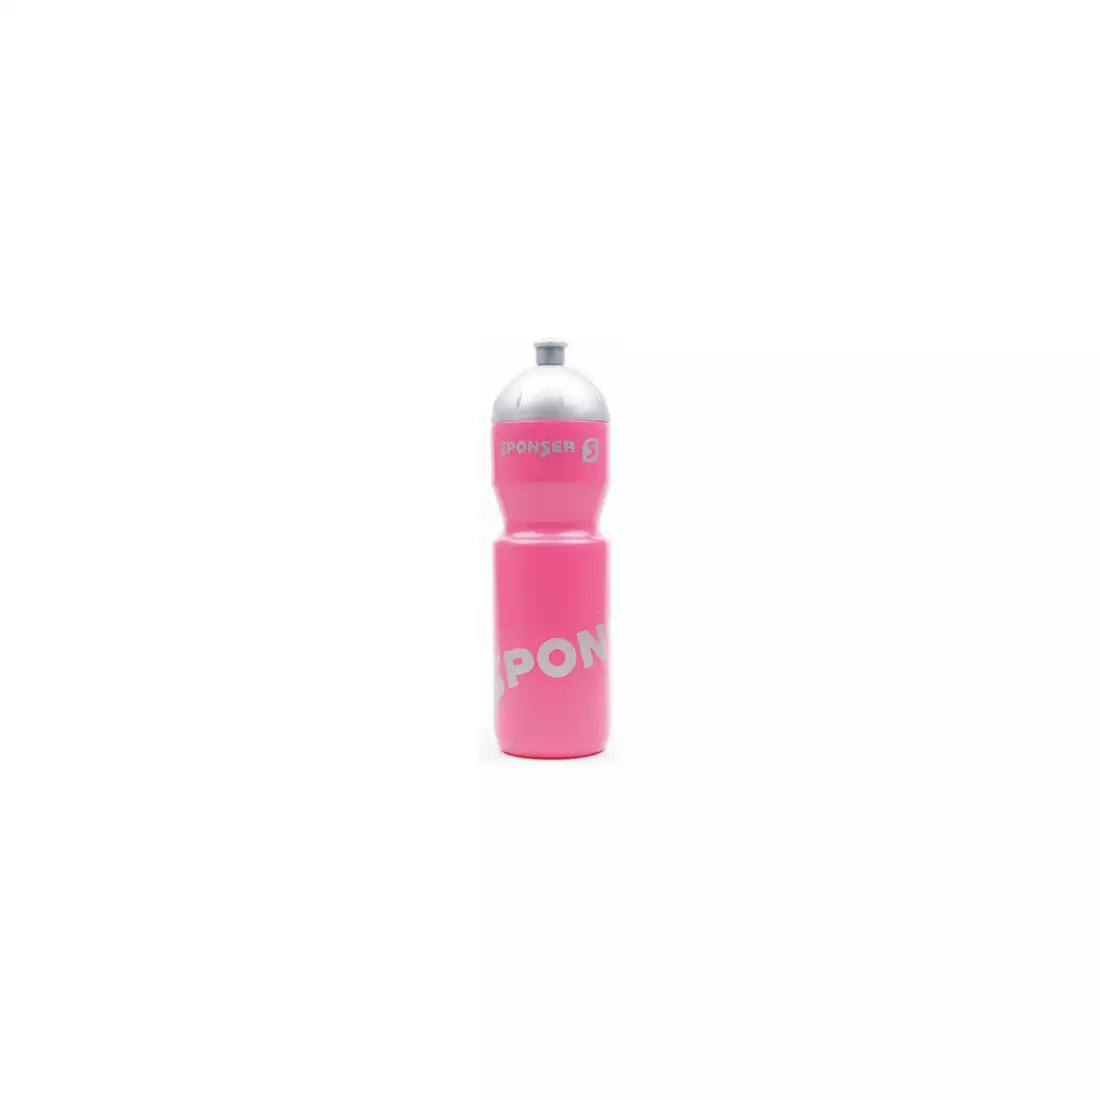 SPONSER NETTO sticla de apa pentru bicicleta 750 ml, roz/argintiu